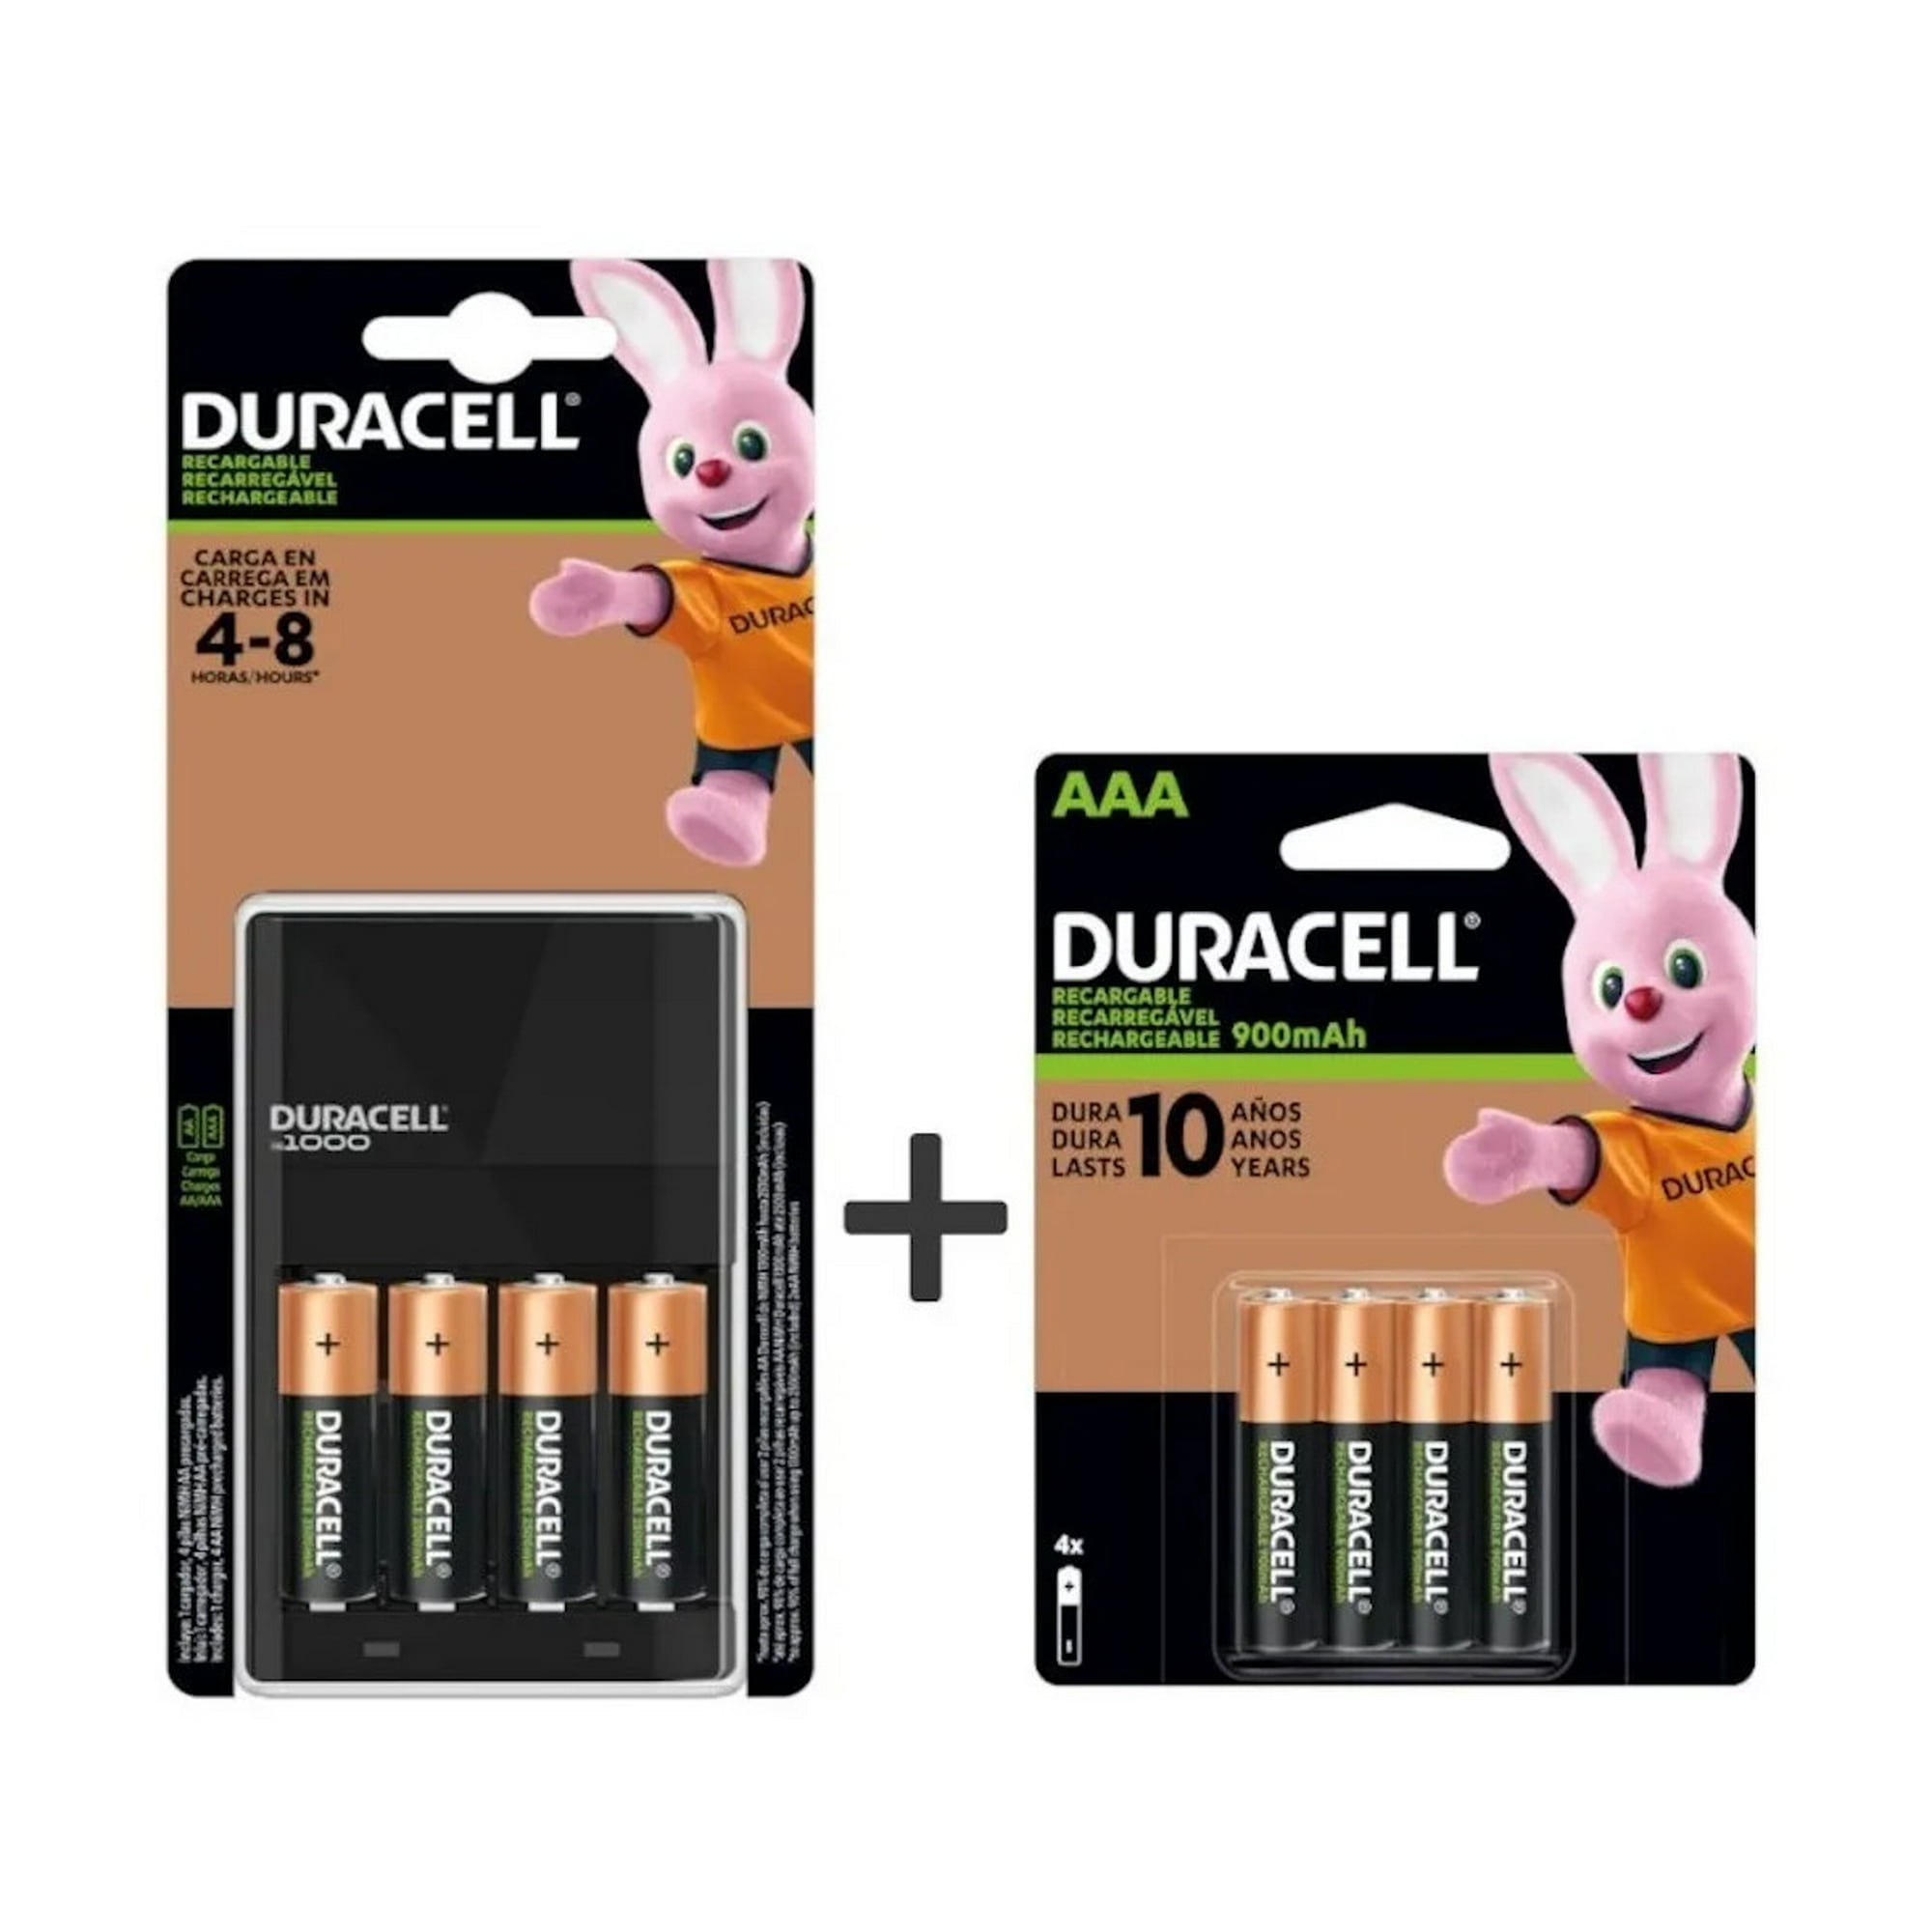 DURACELL - Cargador premium pilas recargables, carga extra rápida  compatible con baterías DURACELL AA y AAA NiMH, incluye 1 cargador + 4 pilas  AA recargables (pre-cargadas) : .com.mx: Salud y Cuidado Personal